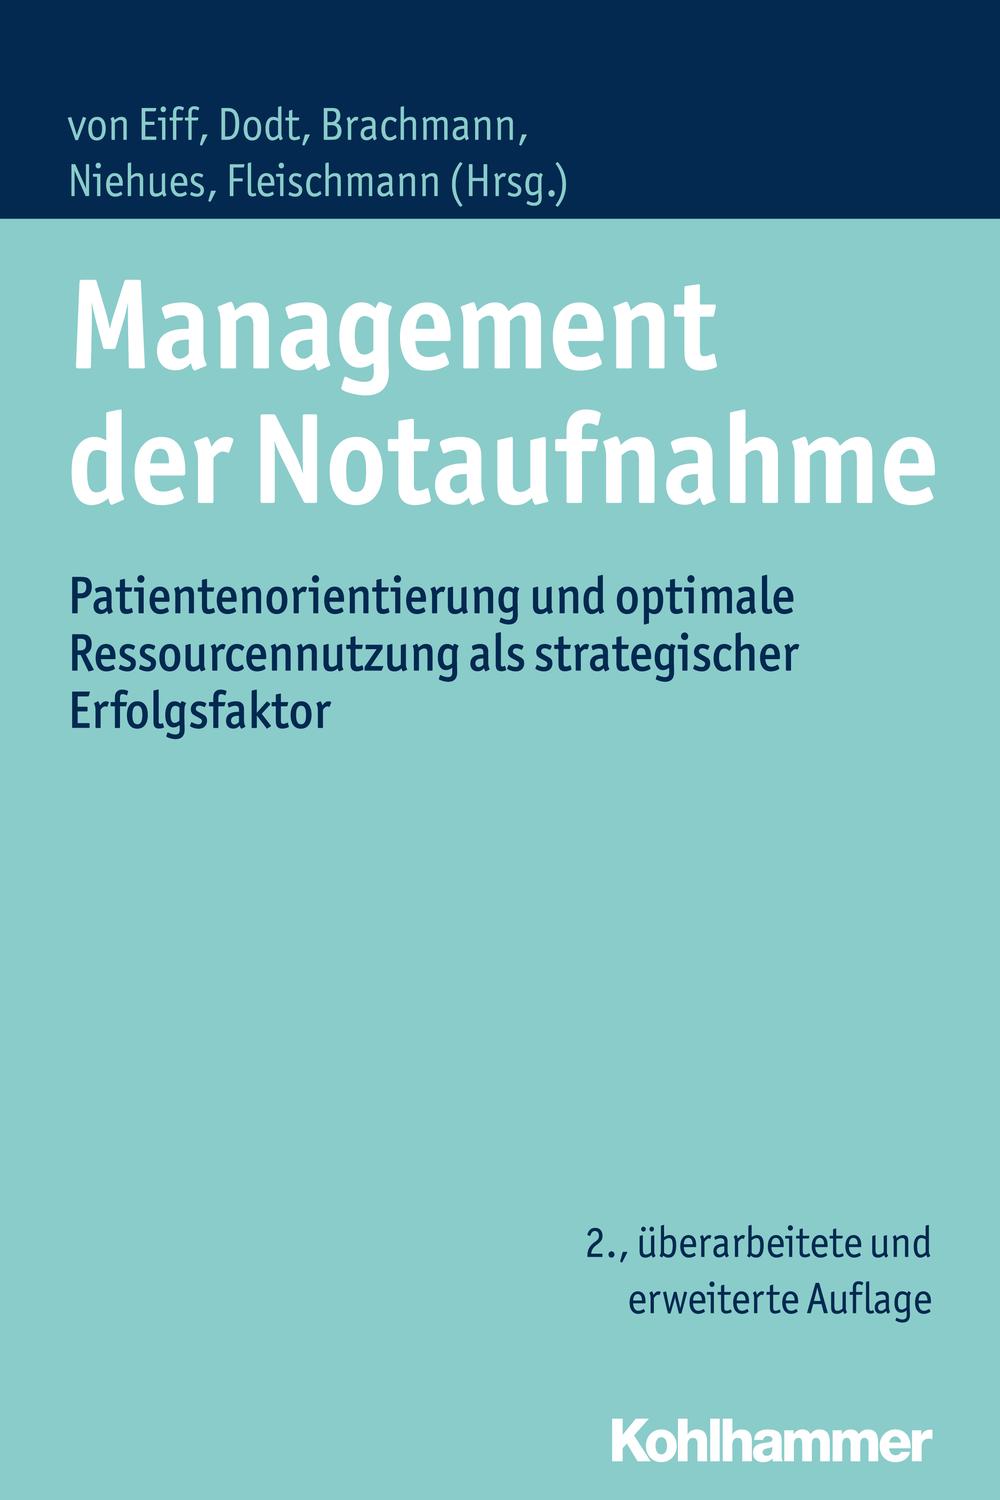 Management der Notaufnahme - Wilfried von Eiff, Christoph Dodt, Matthias Brachmann, Christopher Niehues, Thomas Fleischmann